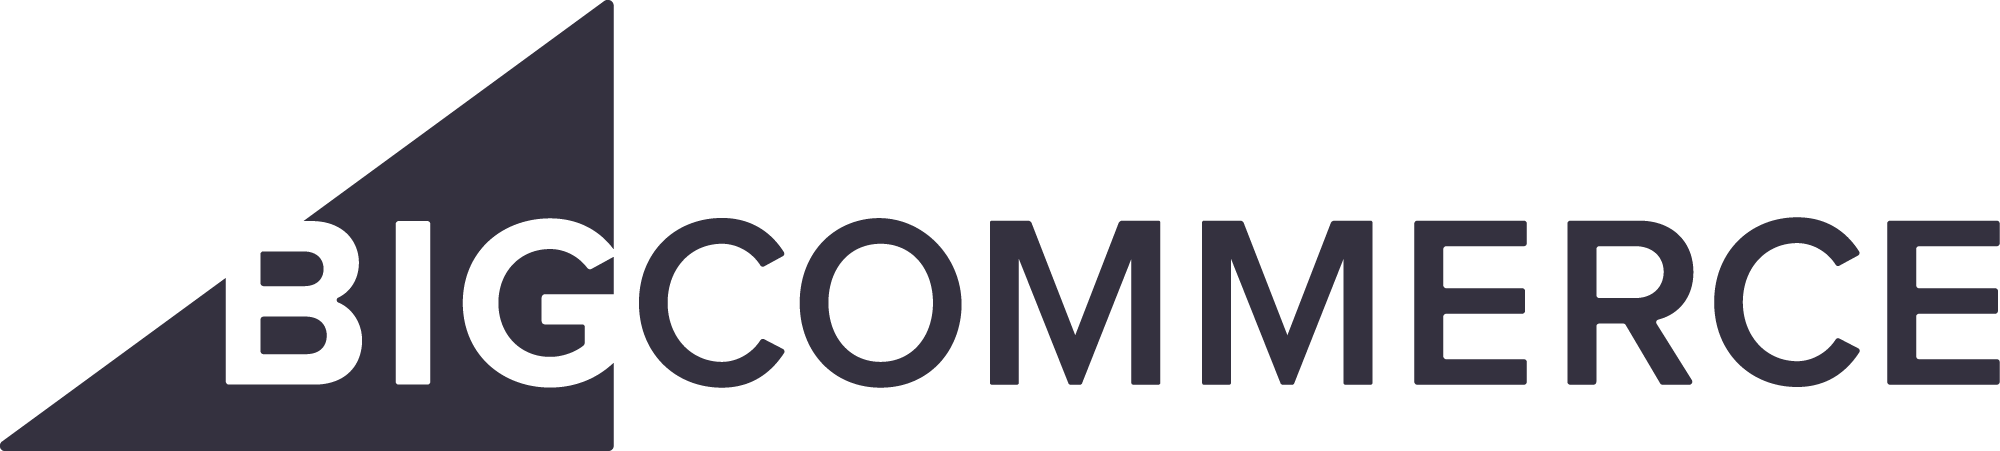 Commerce Logo - Media Kit | BigCommerce